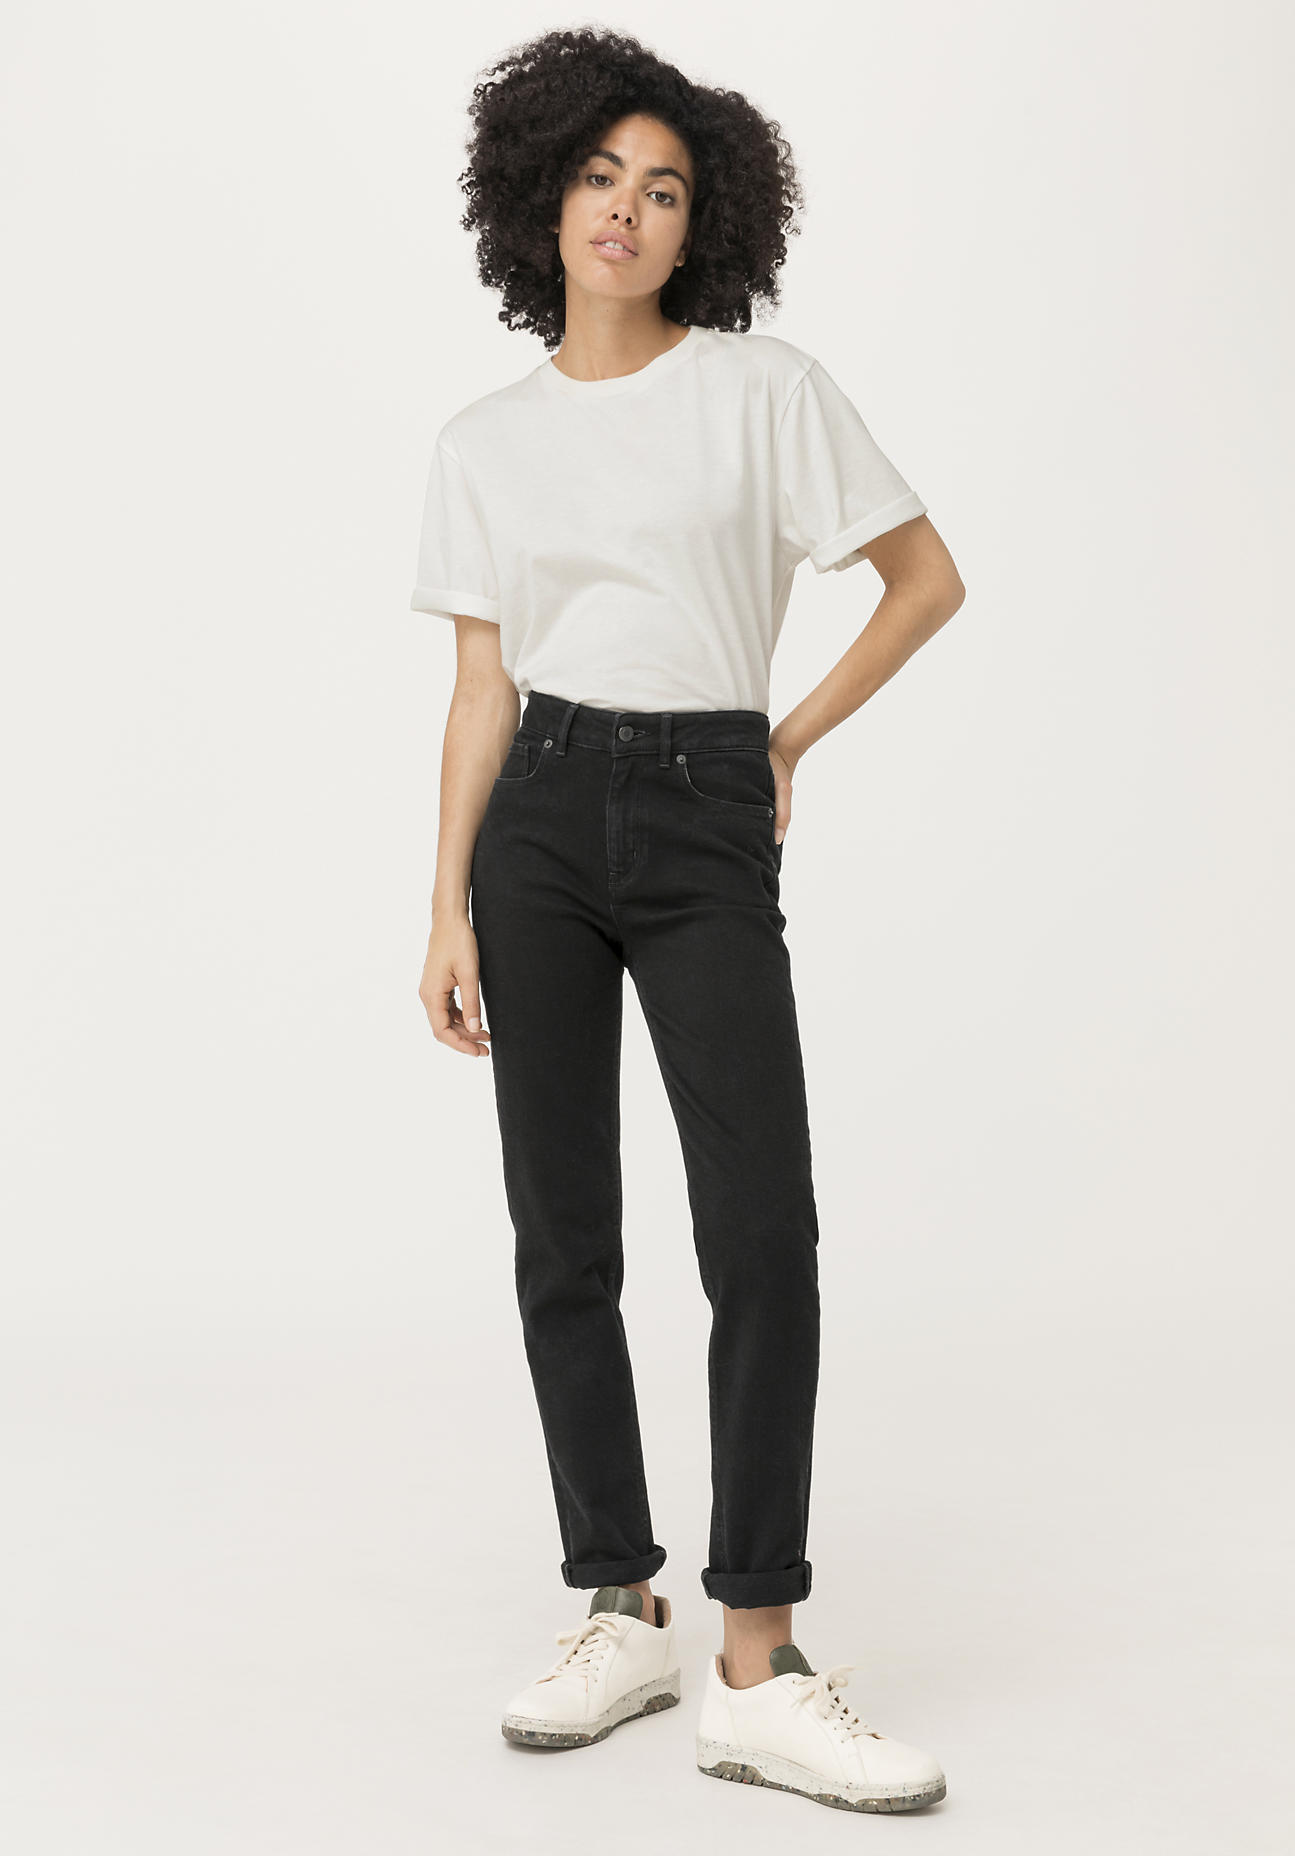 hessnatur Damen Jeans High Rise aus COREVA™ Bio-Denim - schwarz - Größe 28/30